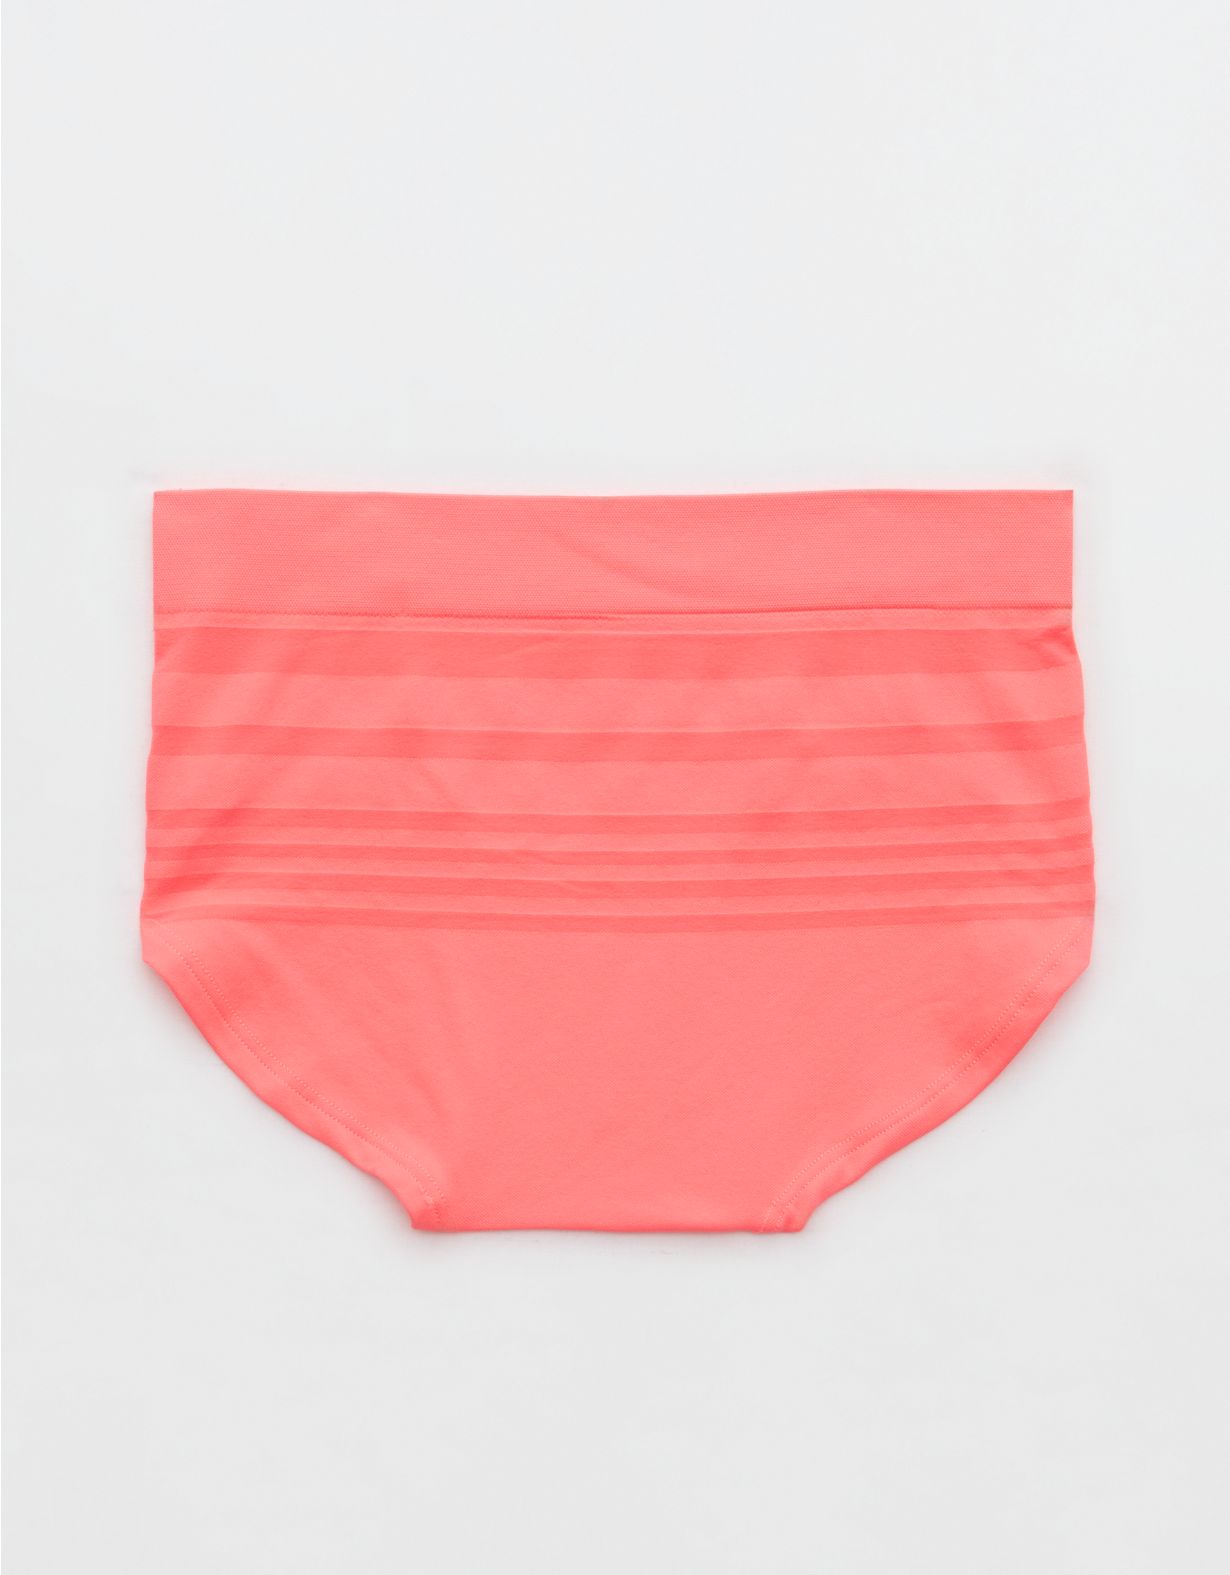 Superchill Seamless Stripe Boybrief Underwear